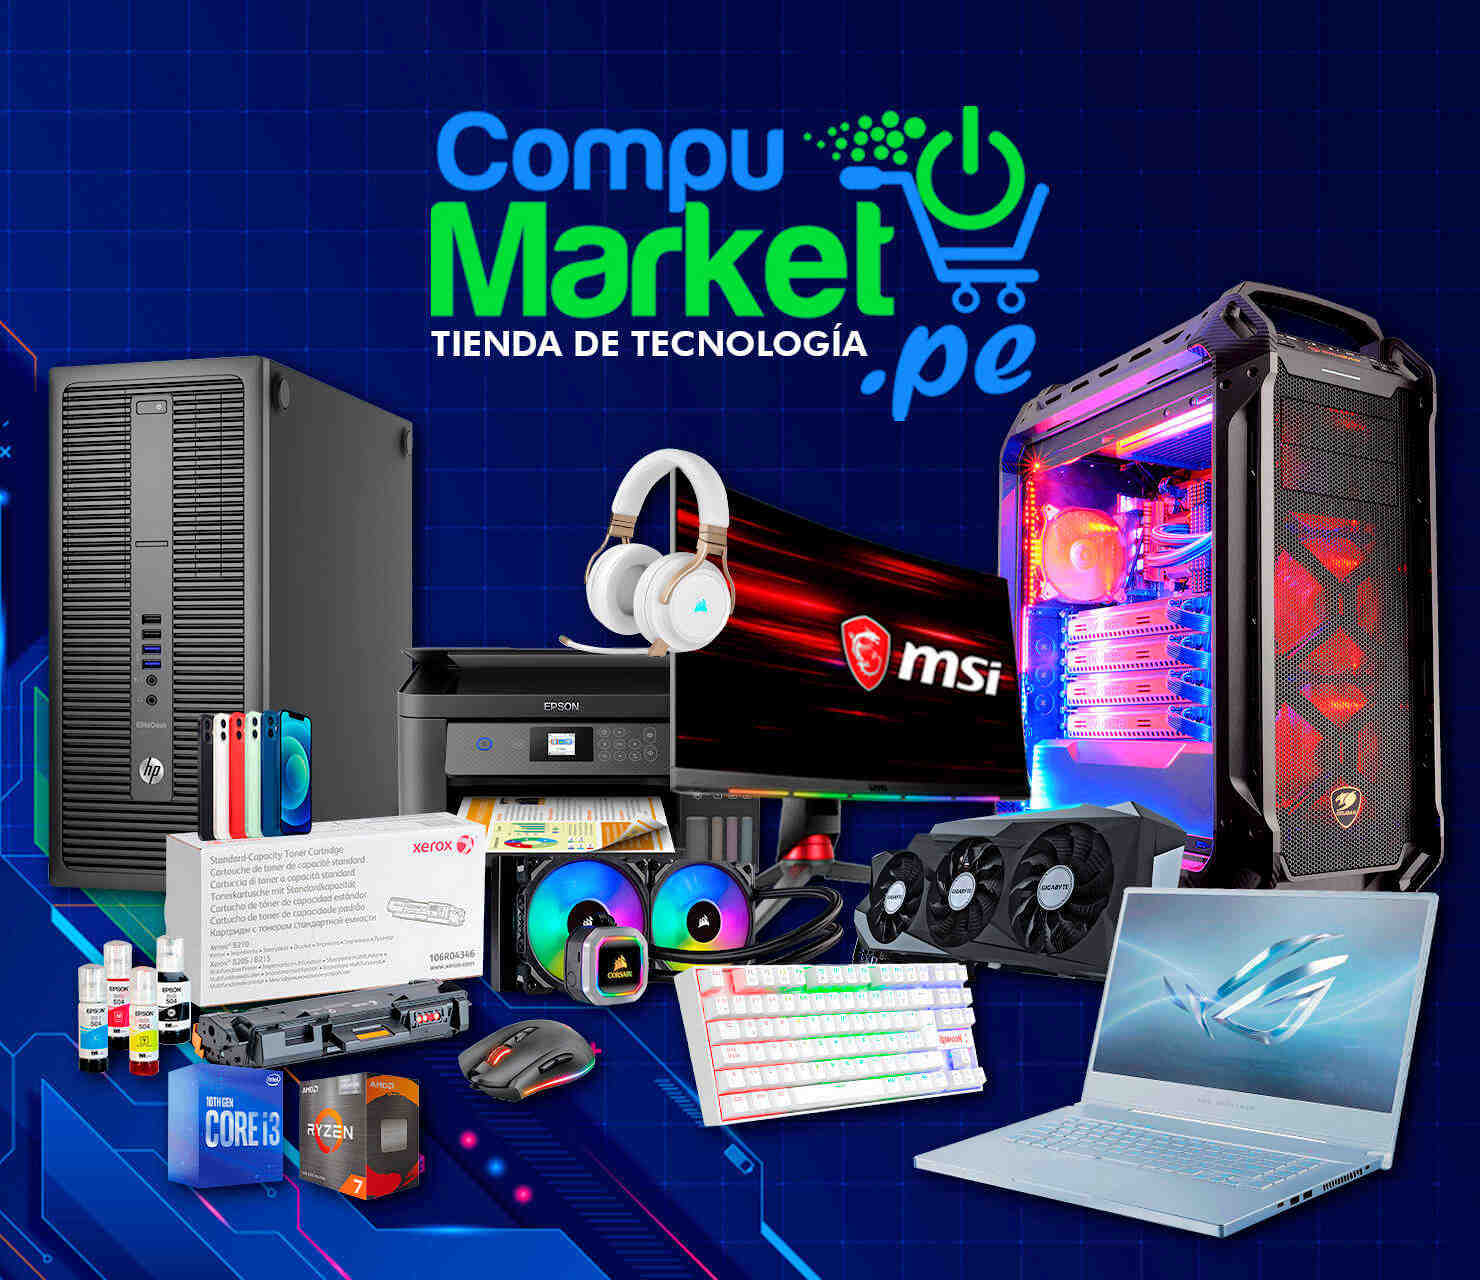 Laptops, Computadoras, Impresoras y Accesorios disponibles